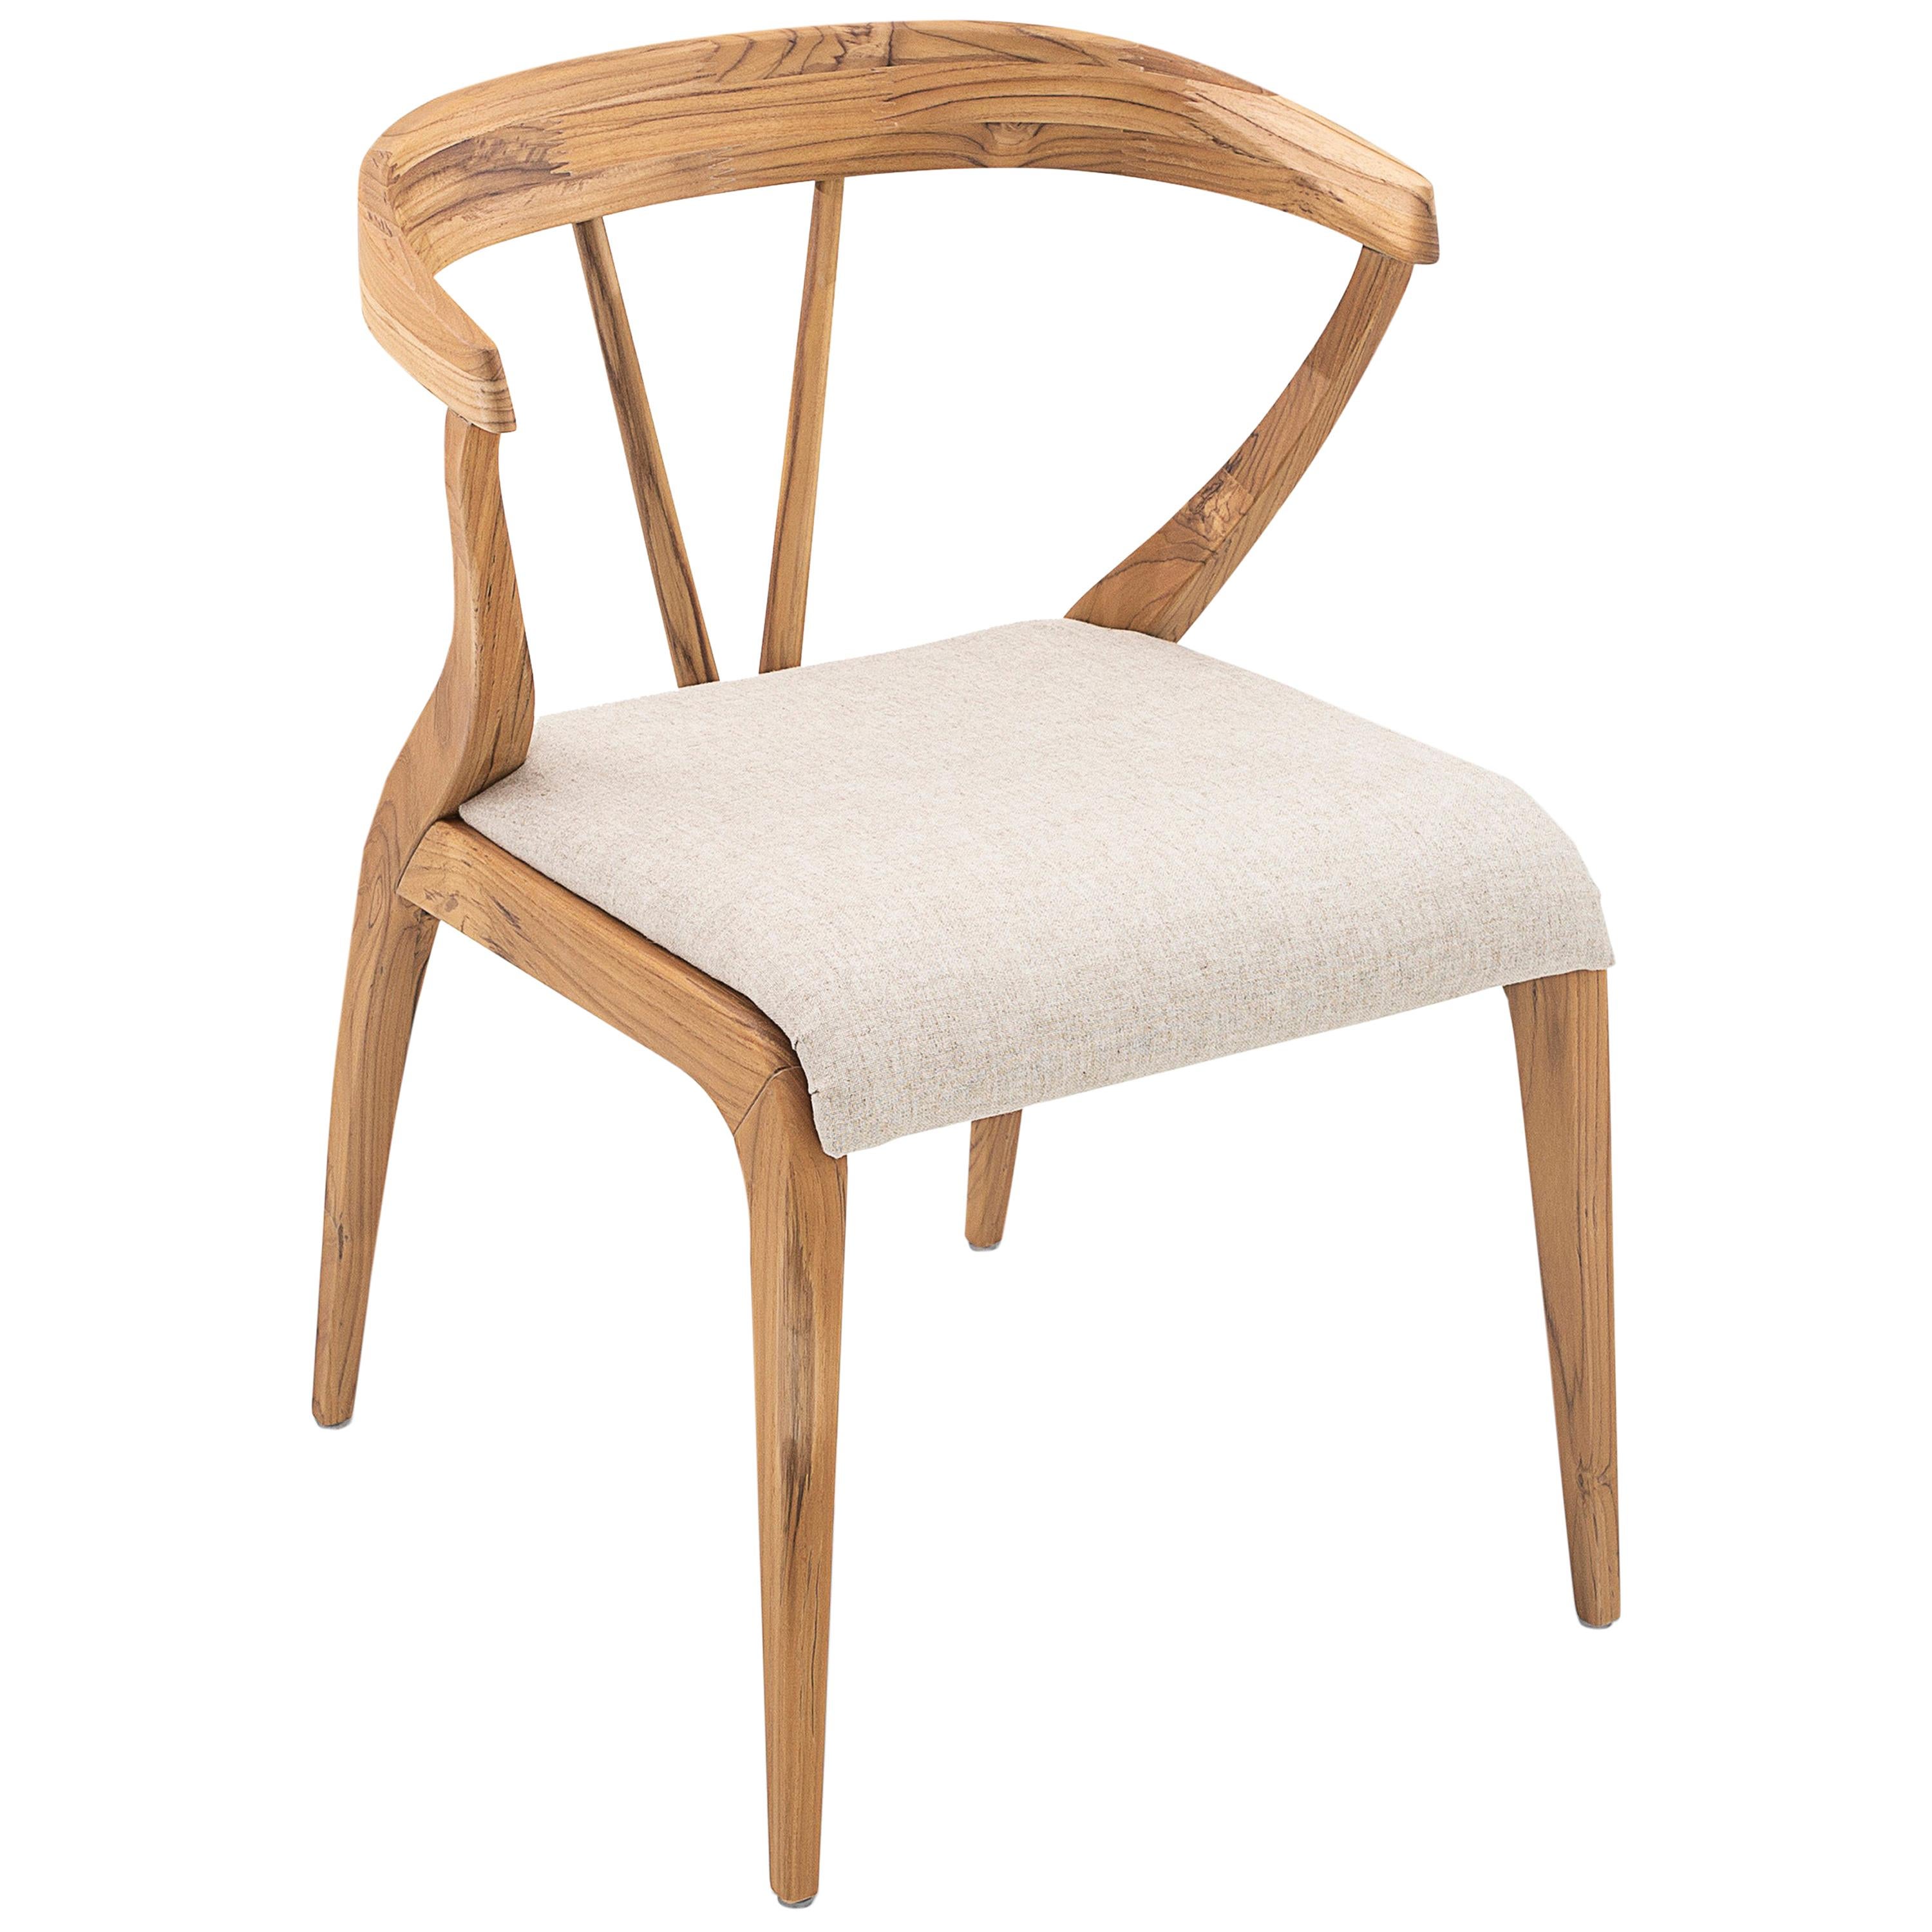 Notre équipe Uultis a créé la chaise de salle à manger Mat aux formes magnifiques pour décorer votre belle table à manger avec une assise rembourrée en tissu ivoire, une finition en bois de teck pour le cadre avec un dossier ouvert. Cette chaise